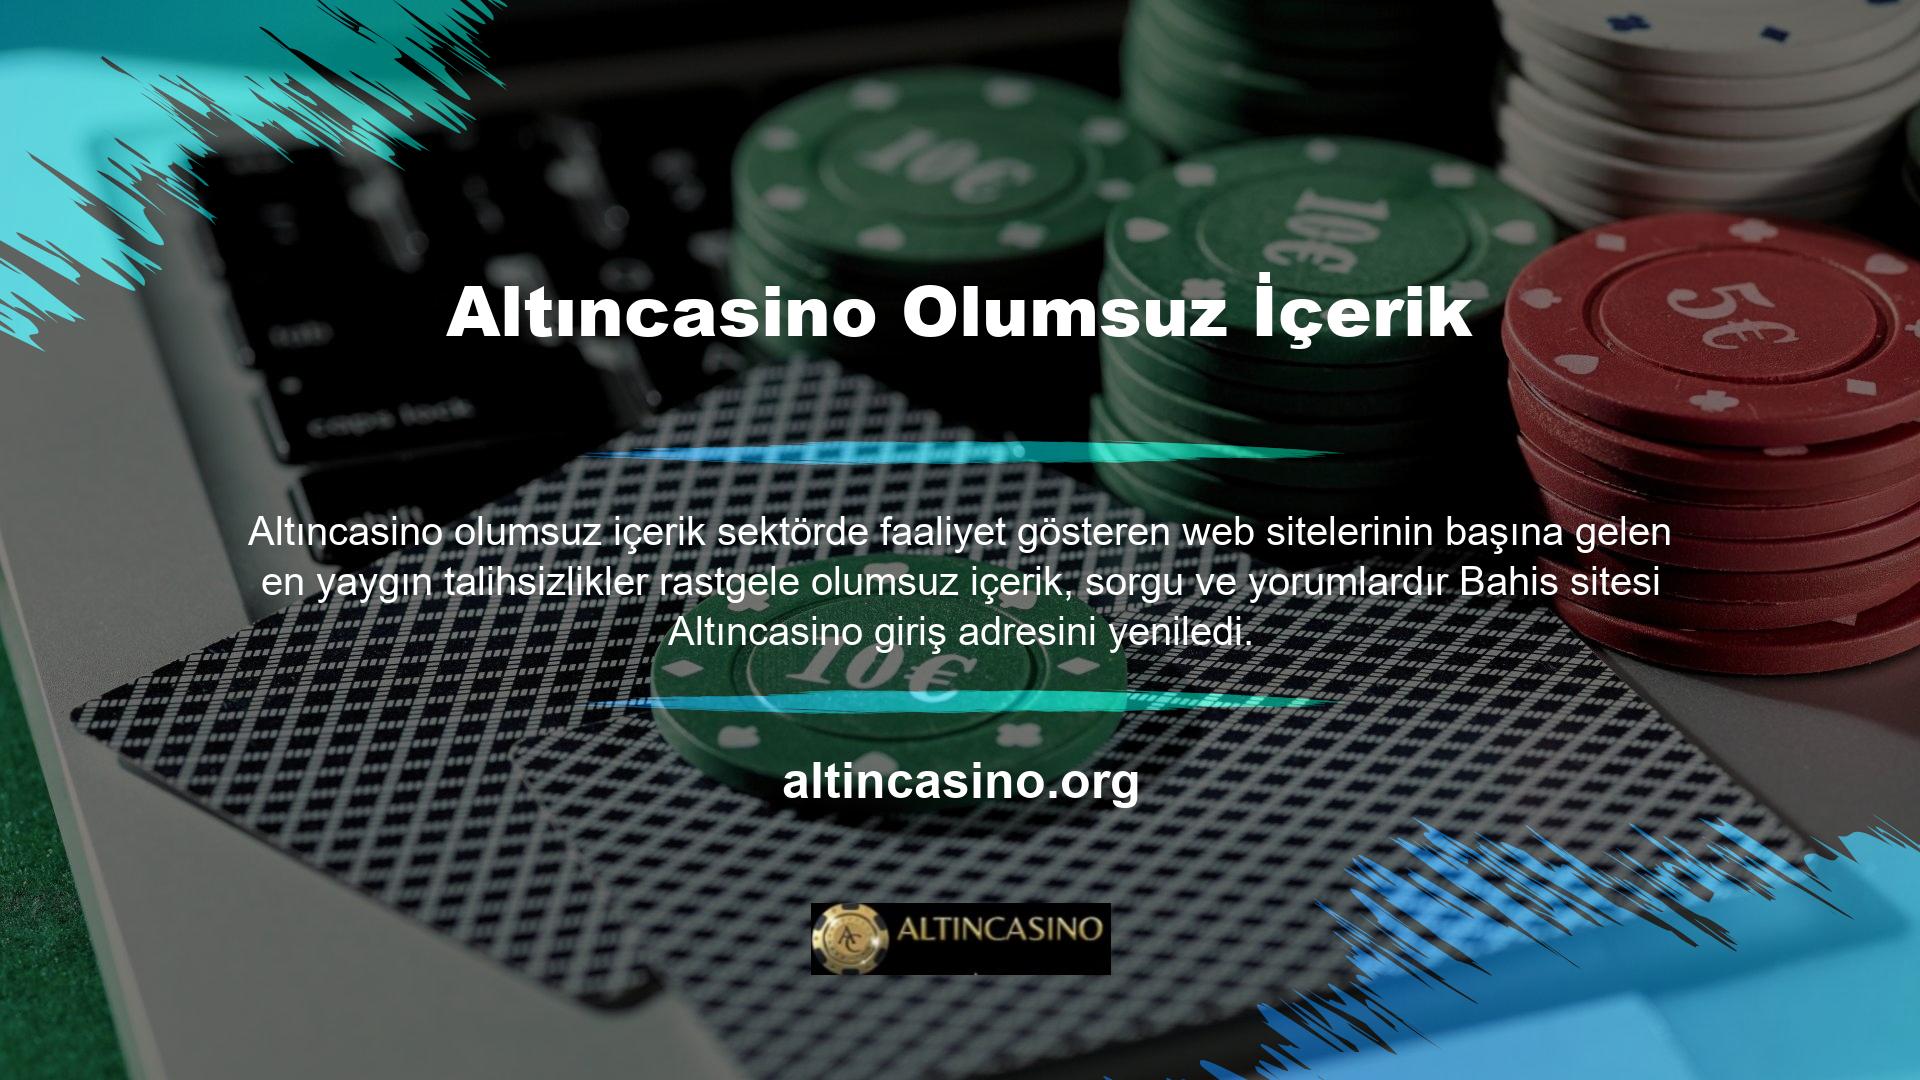 Casino sitesi Altıncasino giriş adresini yeniledi